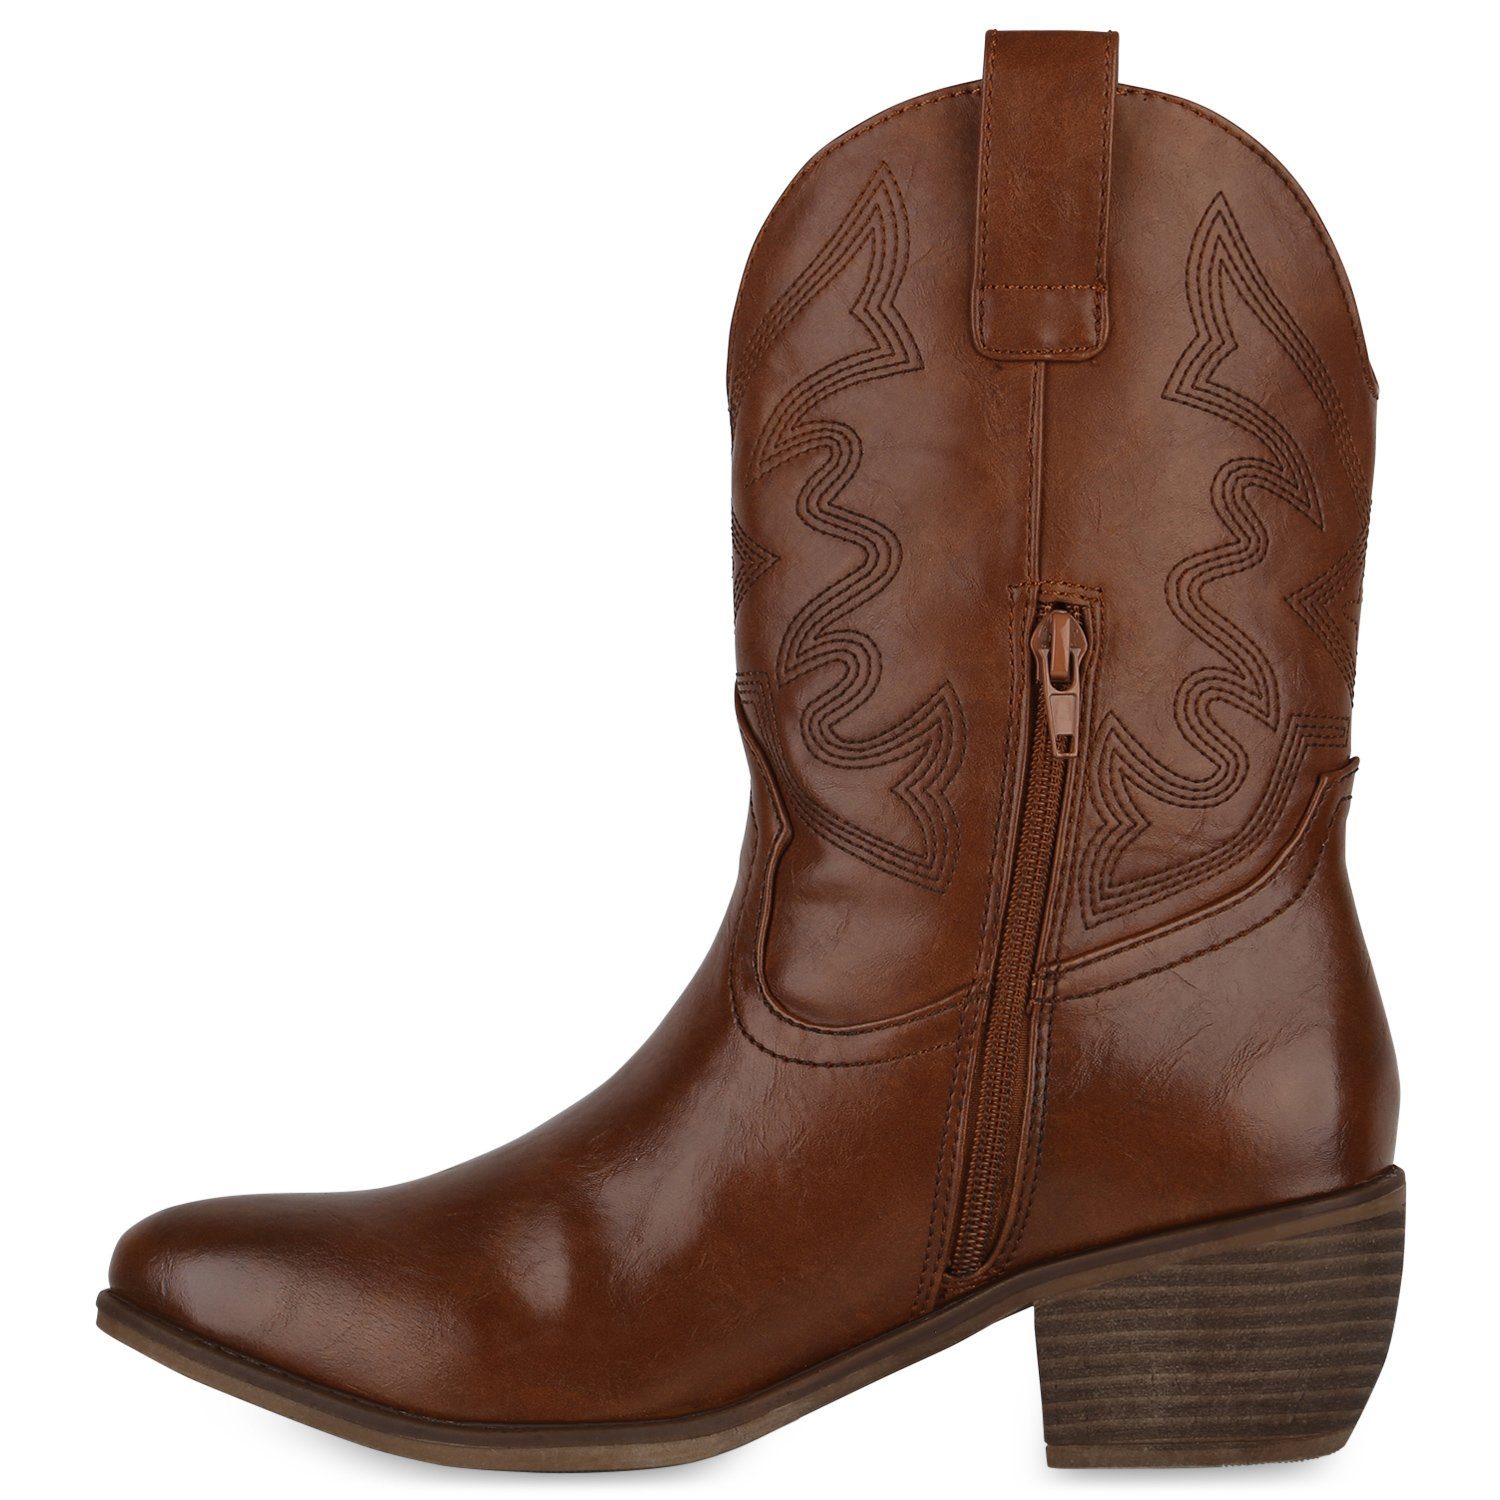 VAN HILL 840534 Boots Cowboy Hellbraun Schuhe